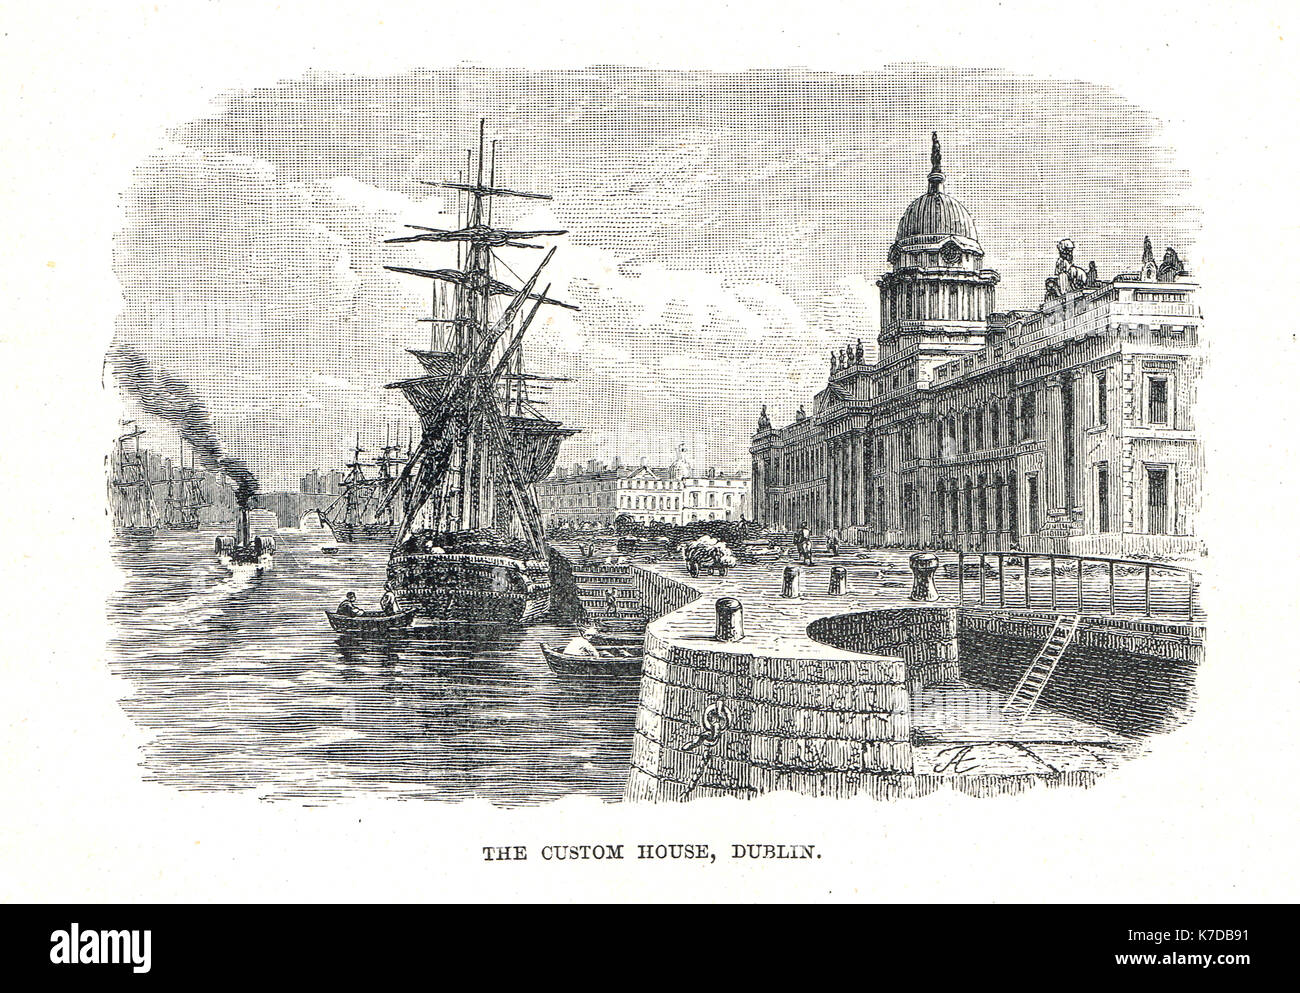 The Custom House, Dublin, 19th century Stock Photo